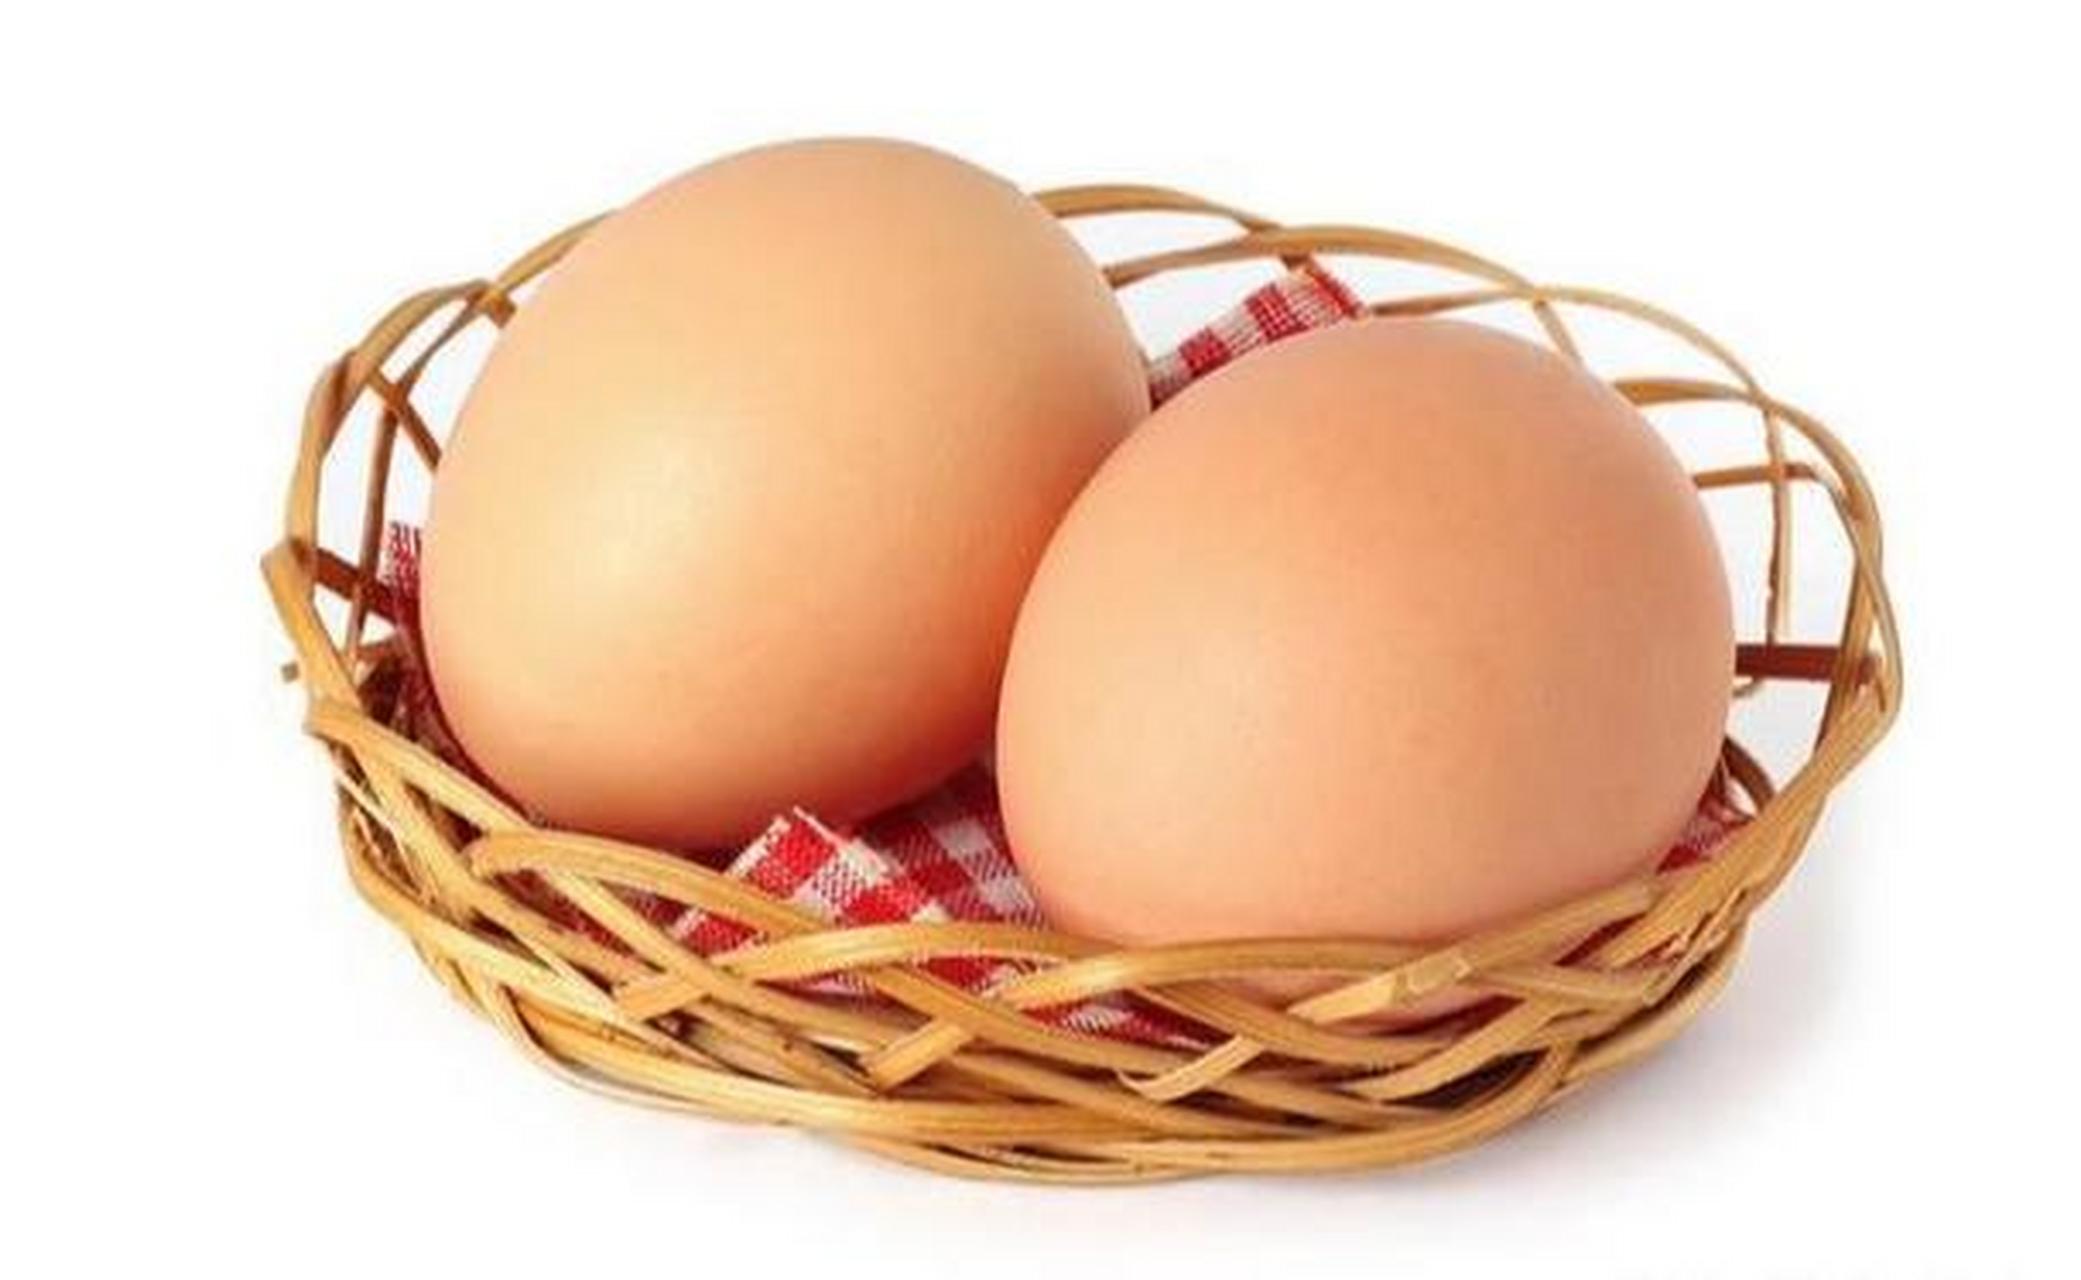 人造鸡蛋成本低但营养价值远低于真鸡蛋,长期食用可能影响健康